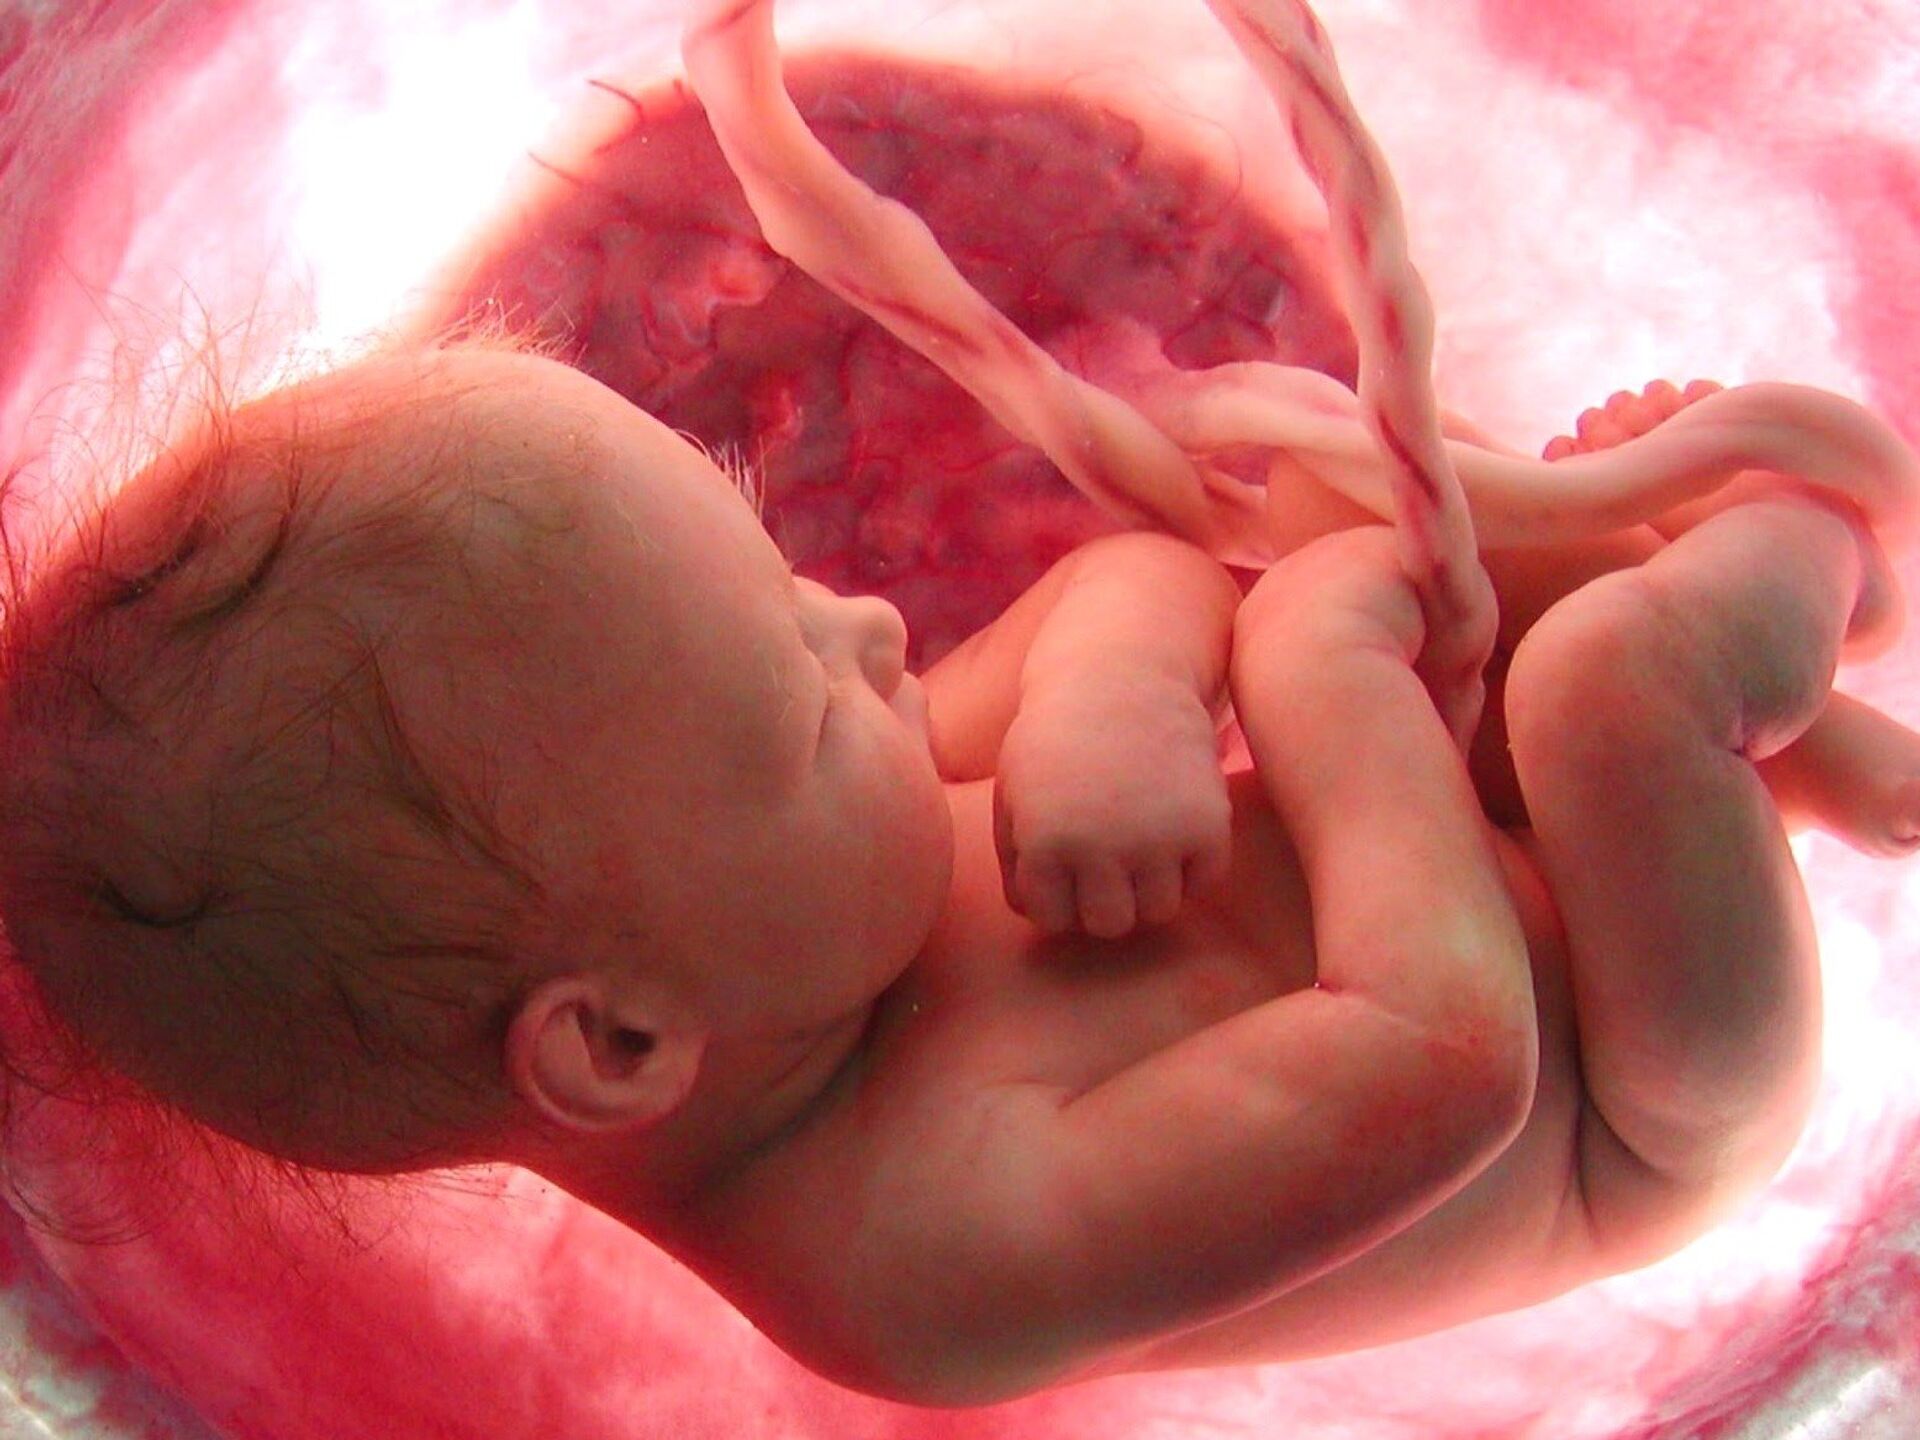 อัตราการเต้นของหัวใจทารกในครรภ์สูงเป็นอันตรายหรือไม่?